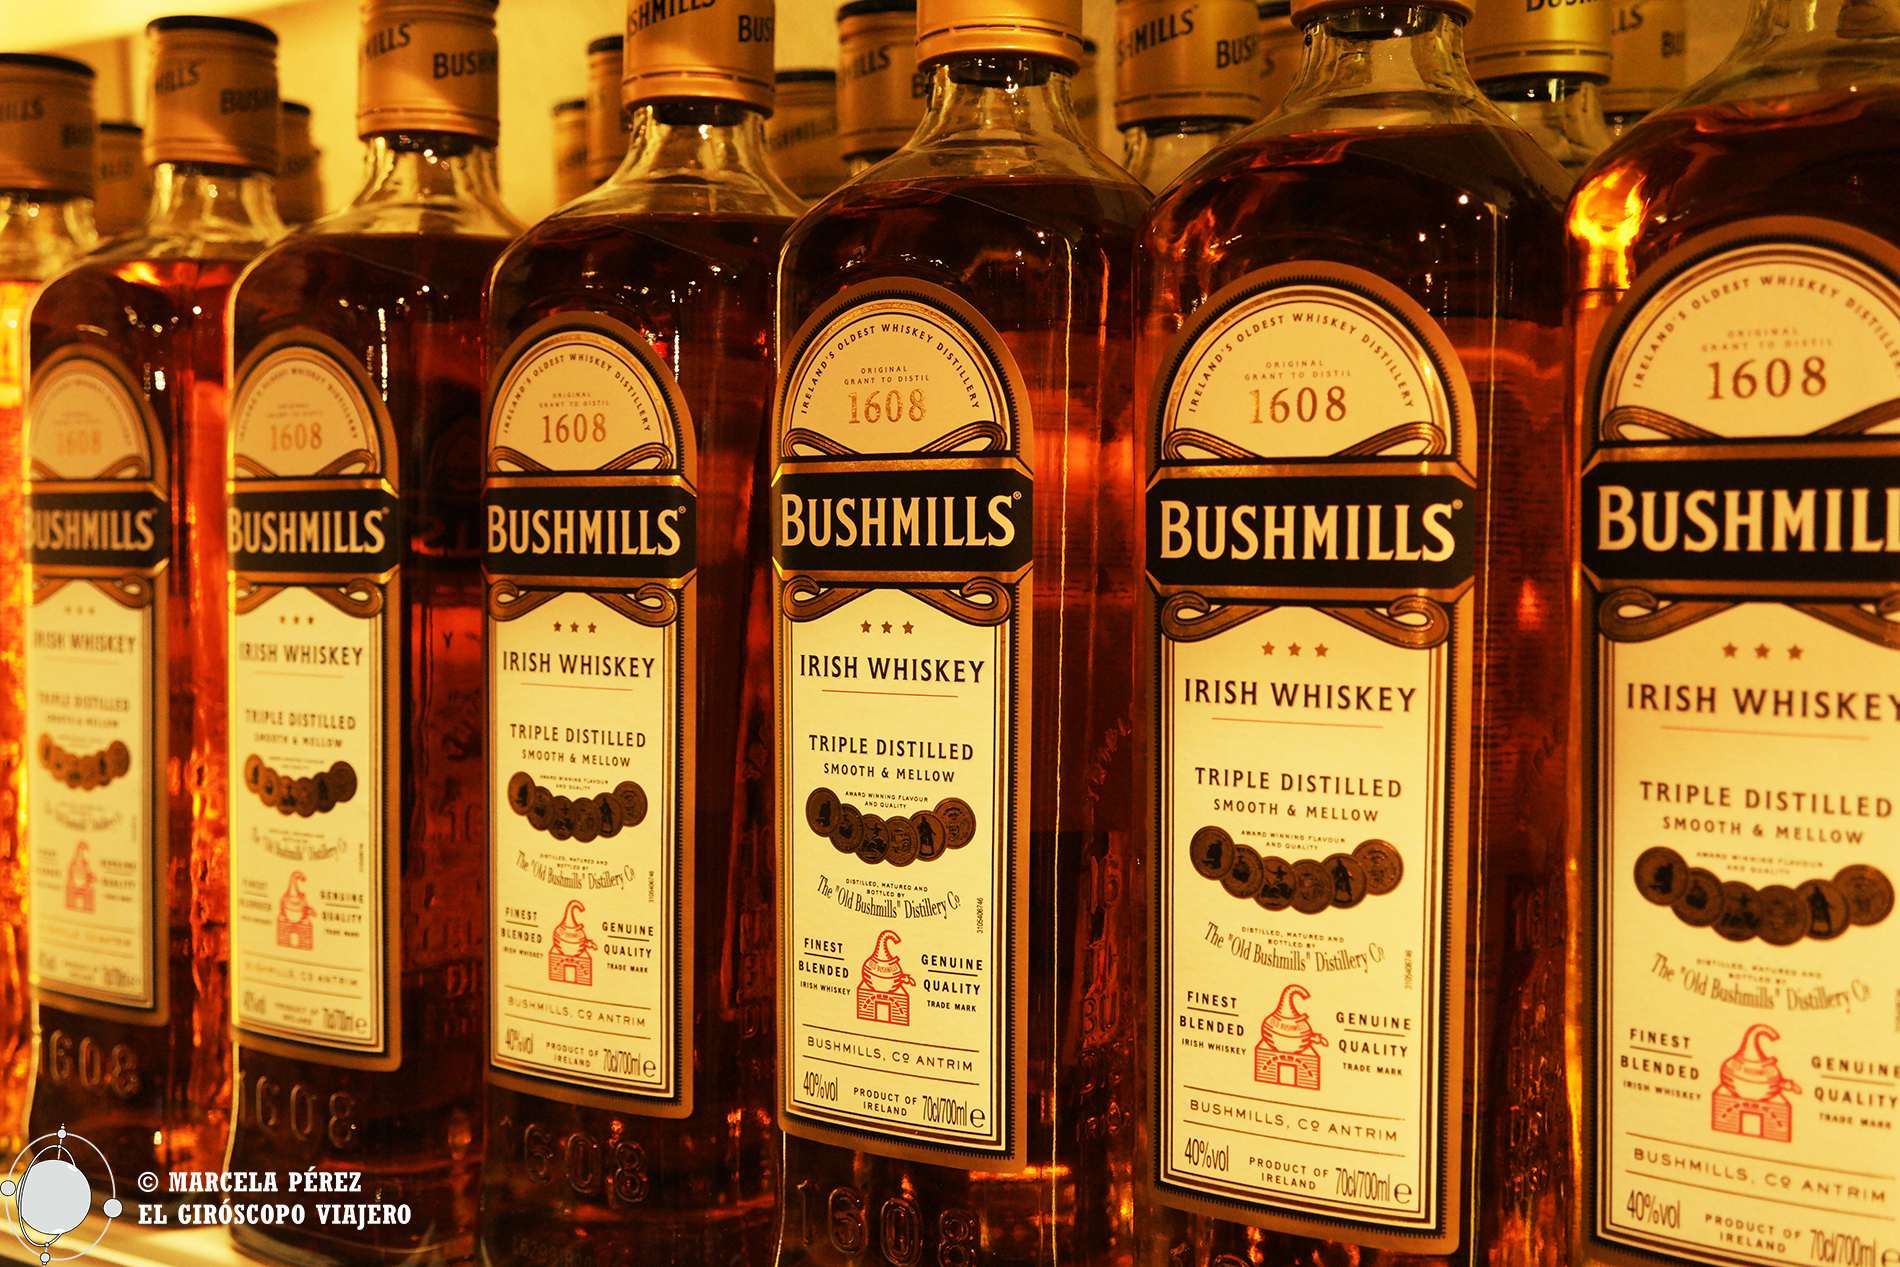 La Fábrica de Bushmills, donde dicen "convertir el agua en oro": Whiskey Bushmills